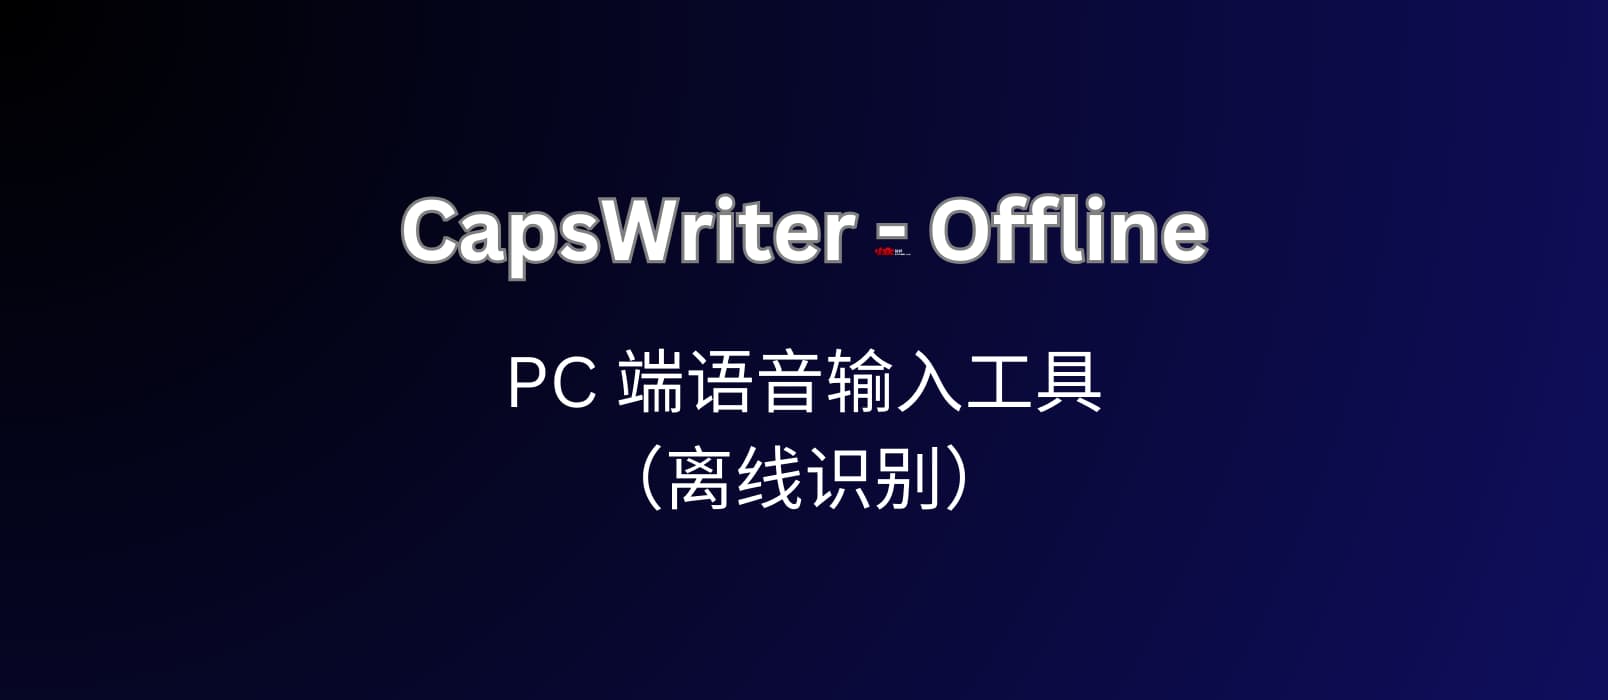 CapsWriter-Offline，可能是最好用的 PC 端语音输入工具（离线识别）  19